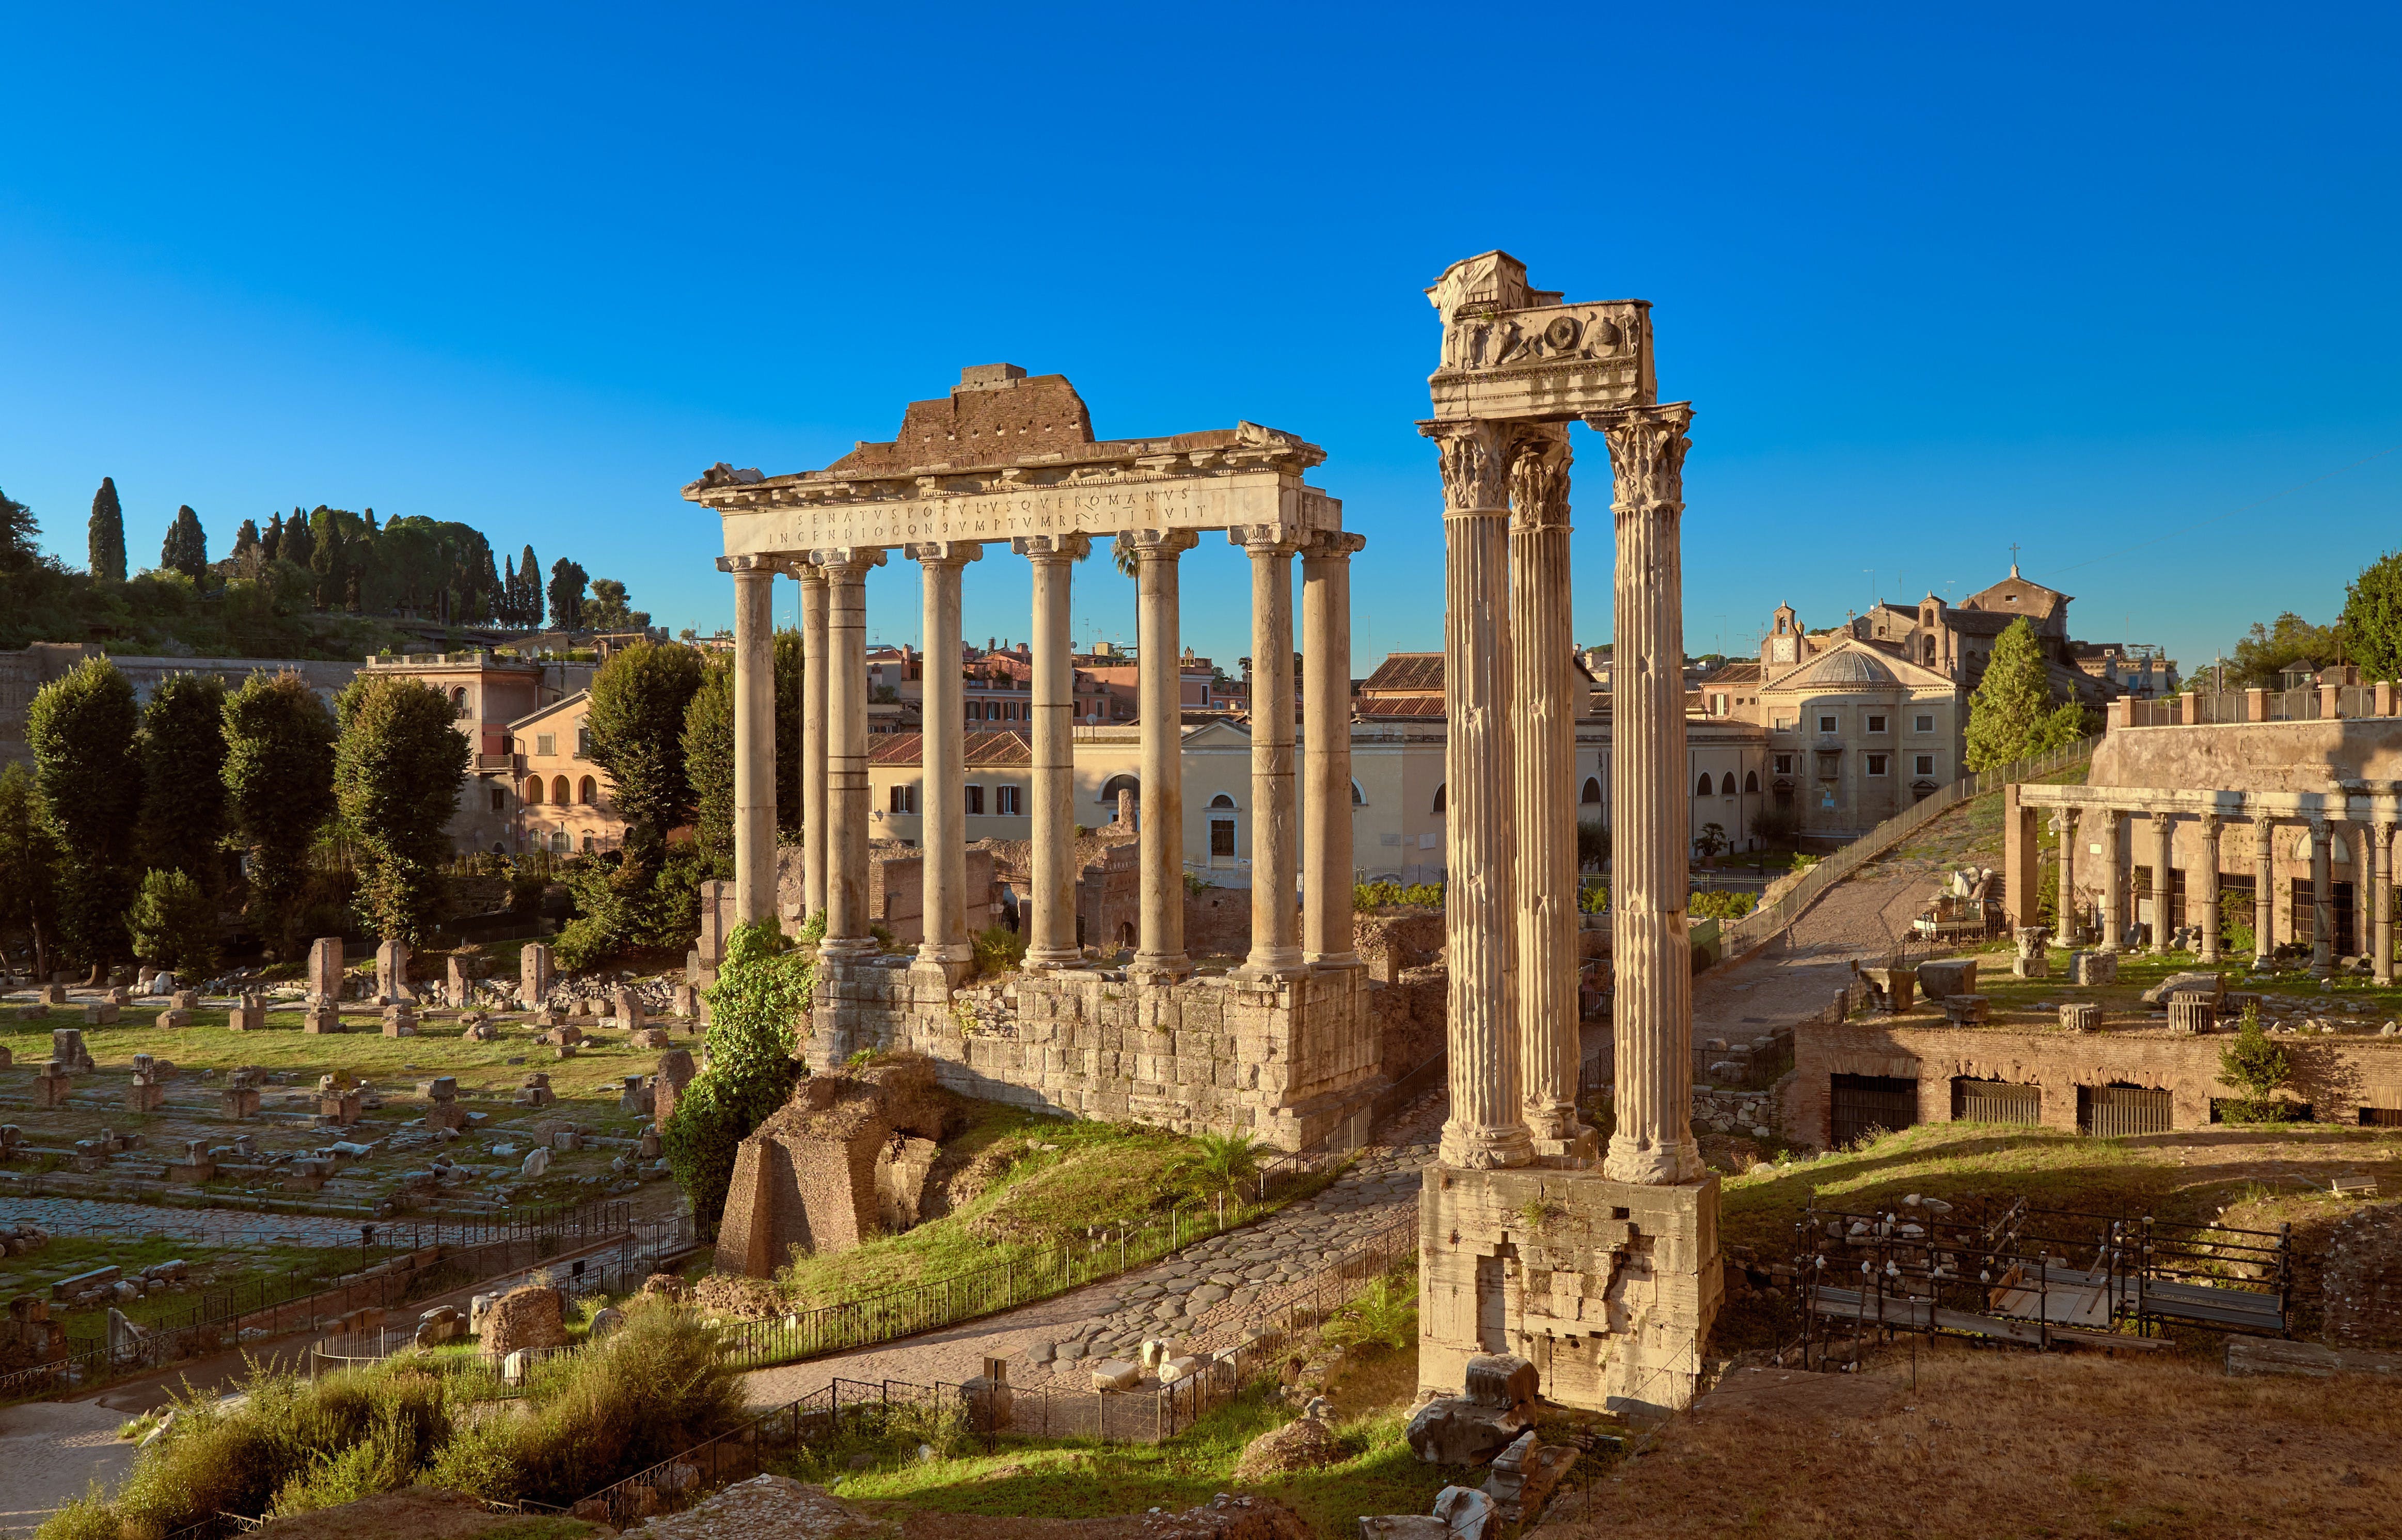 Biglietti per Colosseo e Foro Romano con video multimediale